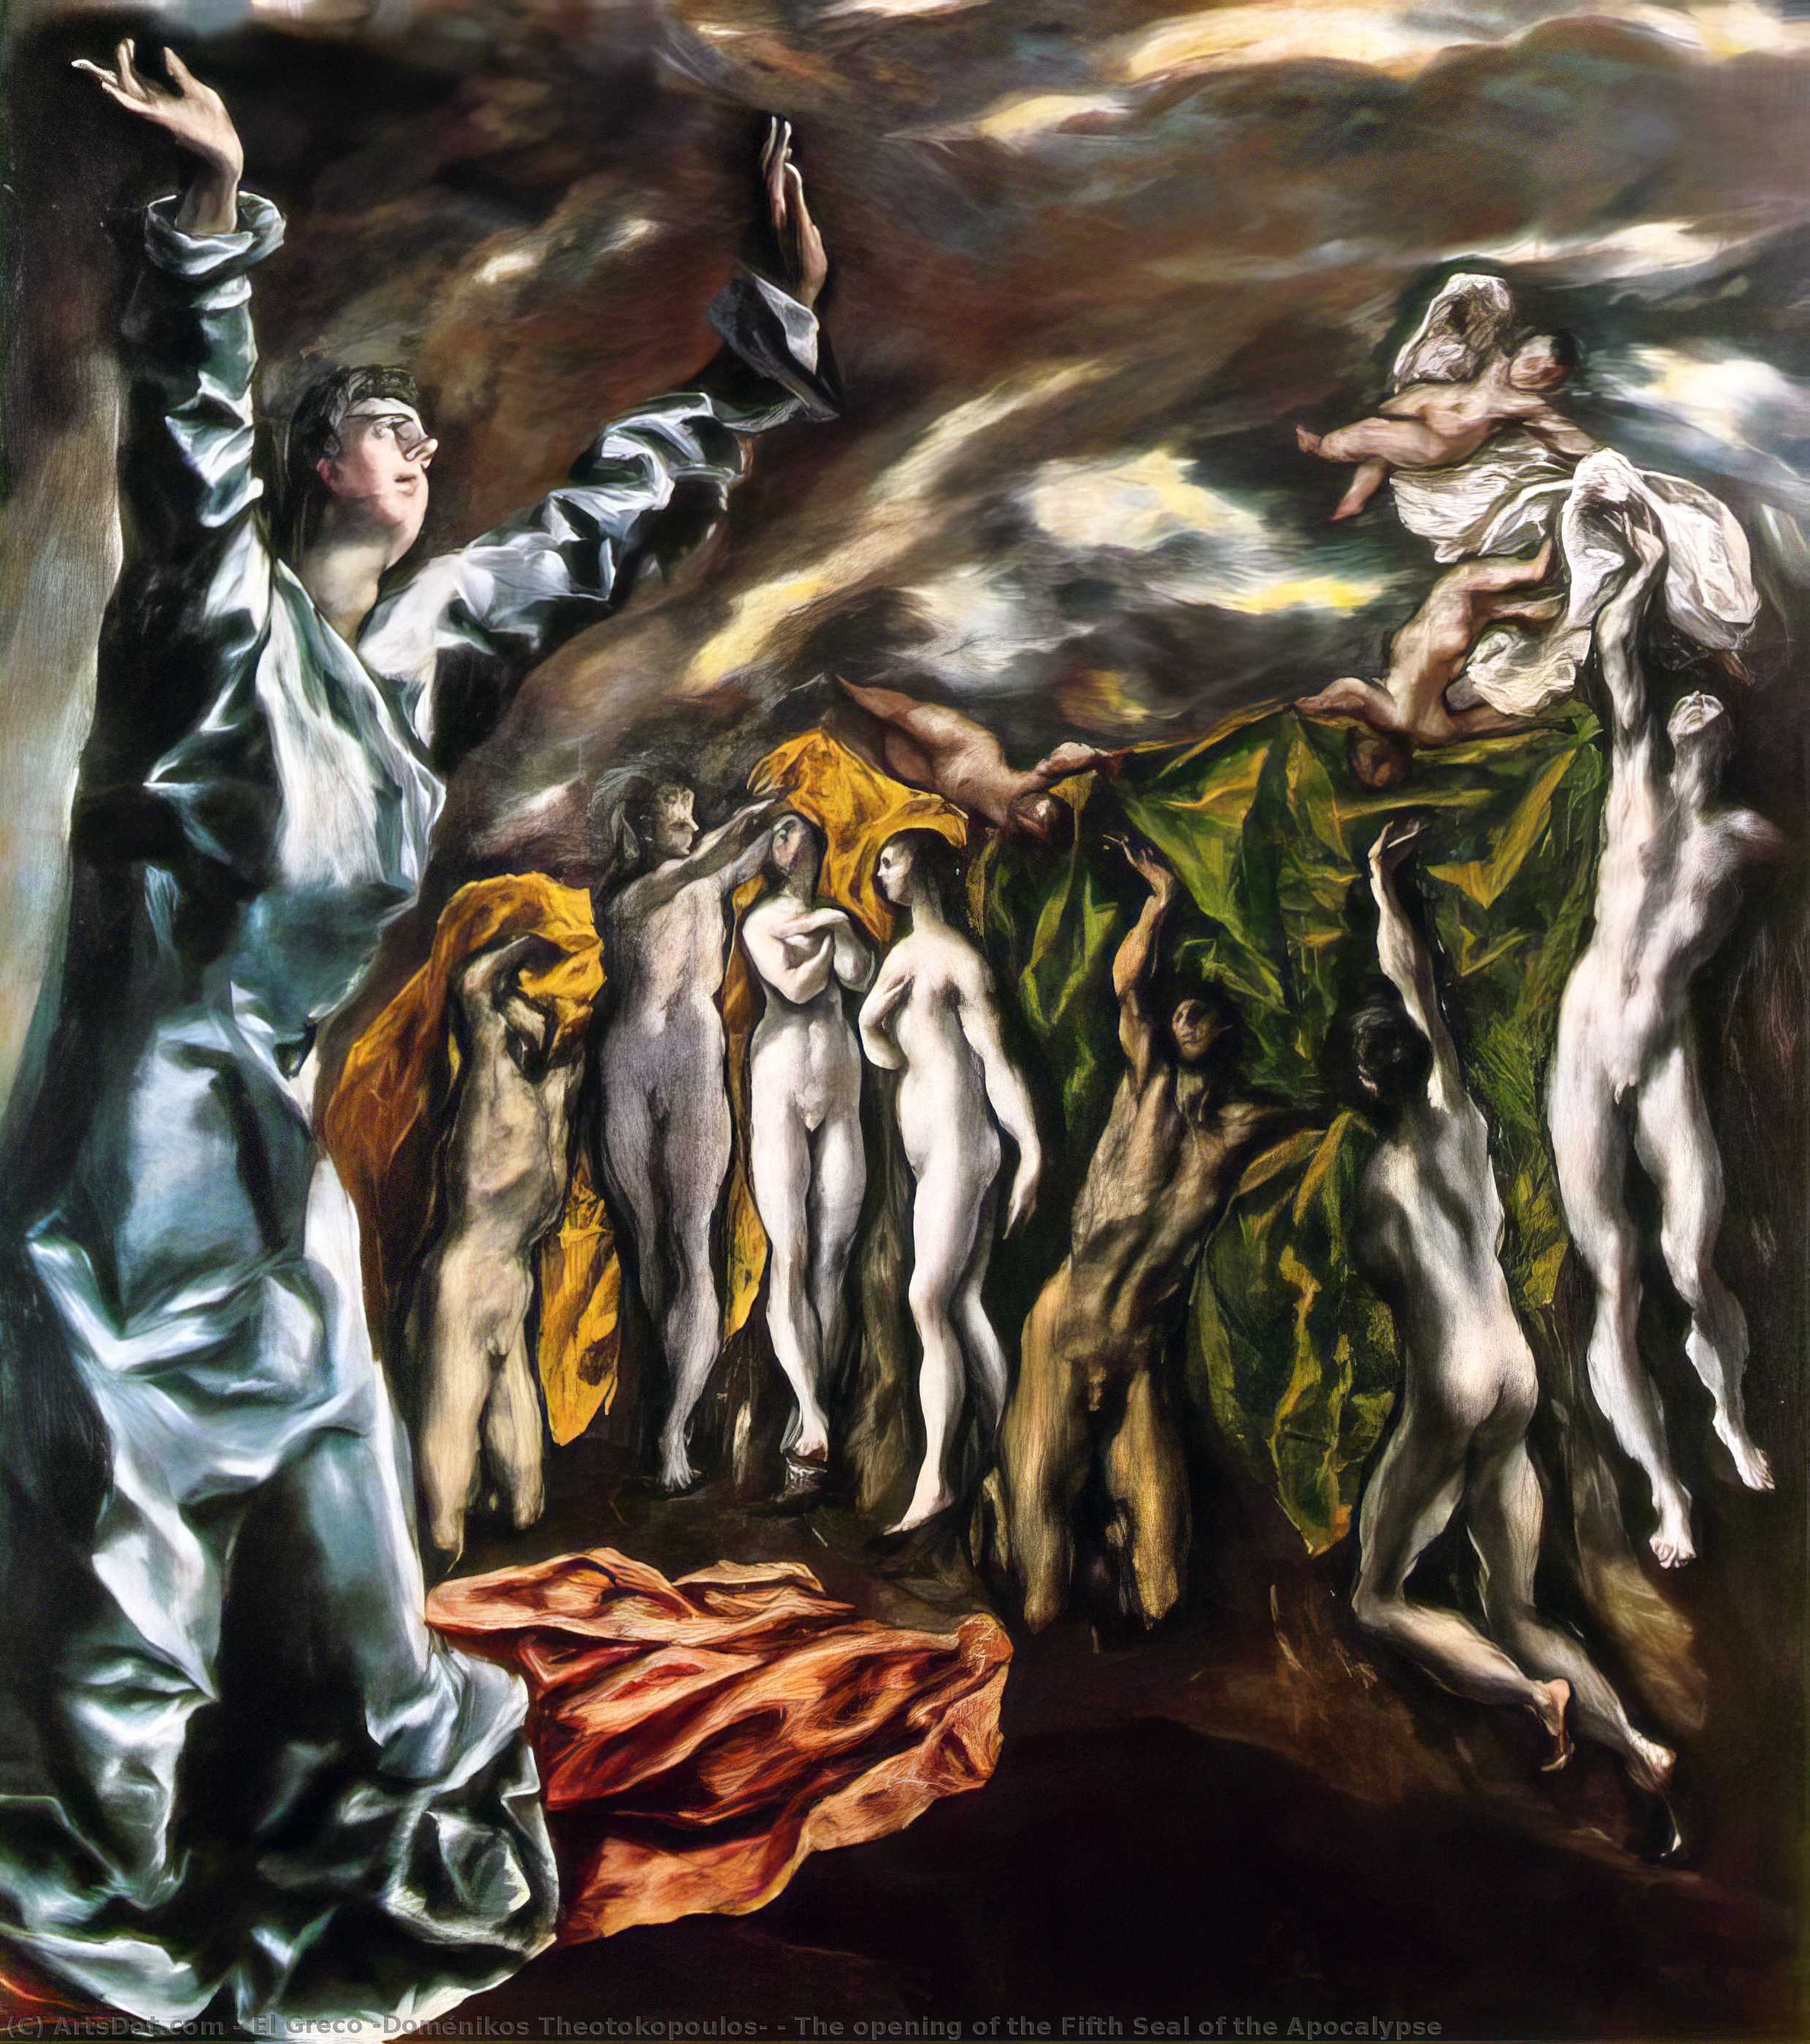 Wikioo.org – L'Enciclopedia delle Belle Arti - Pittura, Opere di El Greco (Doménikos Theotokopoulos) - l'apertura del quinto sigillo dell'apocalisse